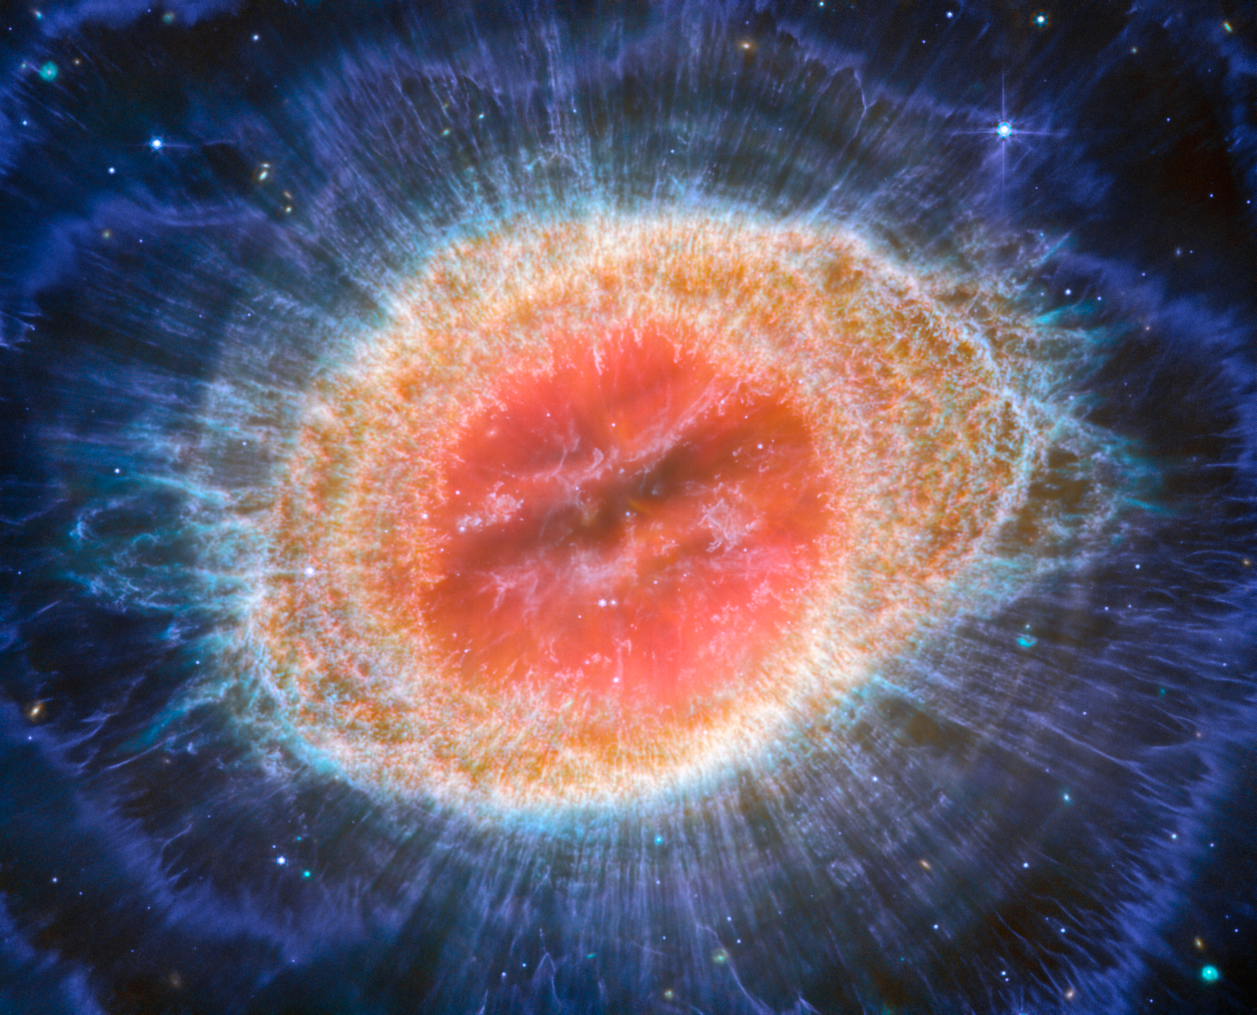 Na ilustracji: Zdjęcie ikonicznej Mgławicy Pierścień (M57, NGC 6720) wykonane przez Teleskop Webba współpracujący z instrumentem MIRI (Mid-InfraRed Instrument). Szczególnie dobrze na tym zdjęciu w średniej podczerwieni uwydatnione są koncentryczne struktury zewnętrznych obszarów pierścienia. Tuż za głównym pierścieniem znajduje się 10 koncentrycznych łuków. Uważa się, że te łuki powstały w wyniku oddziaływania gwiazdy centralnej z małomasywnym gwiezdnym towarzyszem orbitującym w odległości porównywalnej do Ziemia-Pluton w naszym Układzie Słonecznym. Źródło: ESA/Webb, NASA, CSA, M. Barlow (University College London), N. Cox (ACRI-ST), R. Wesson (Cardiff University)